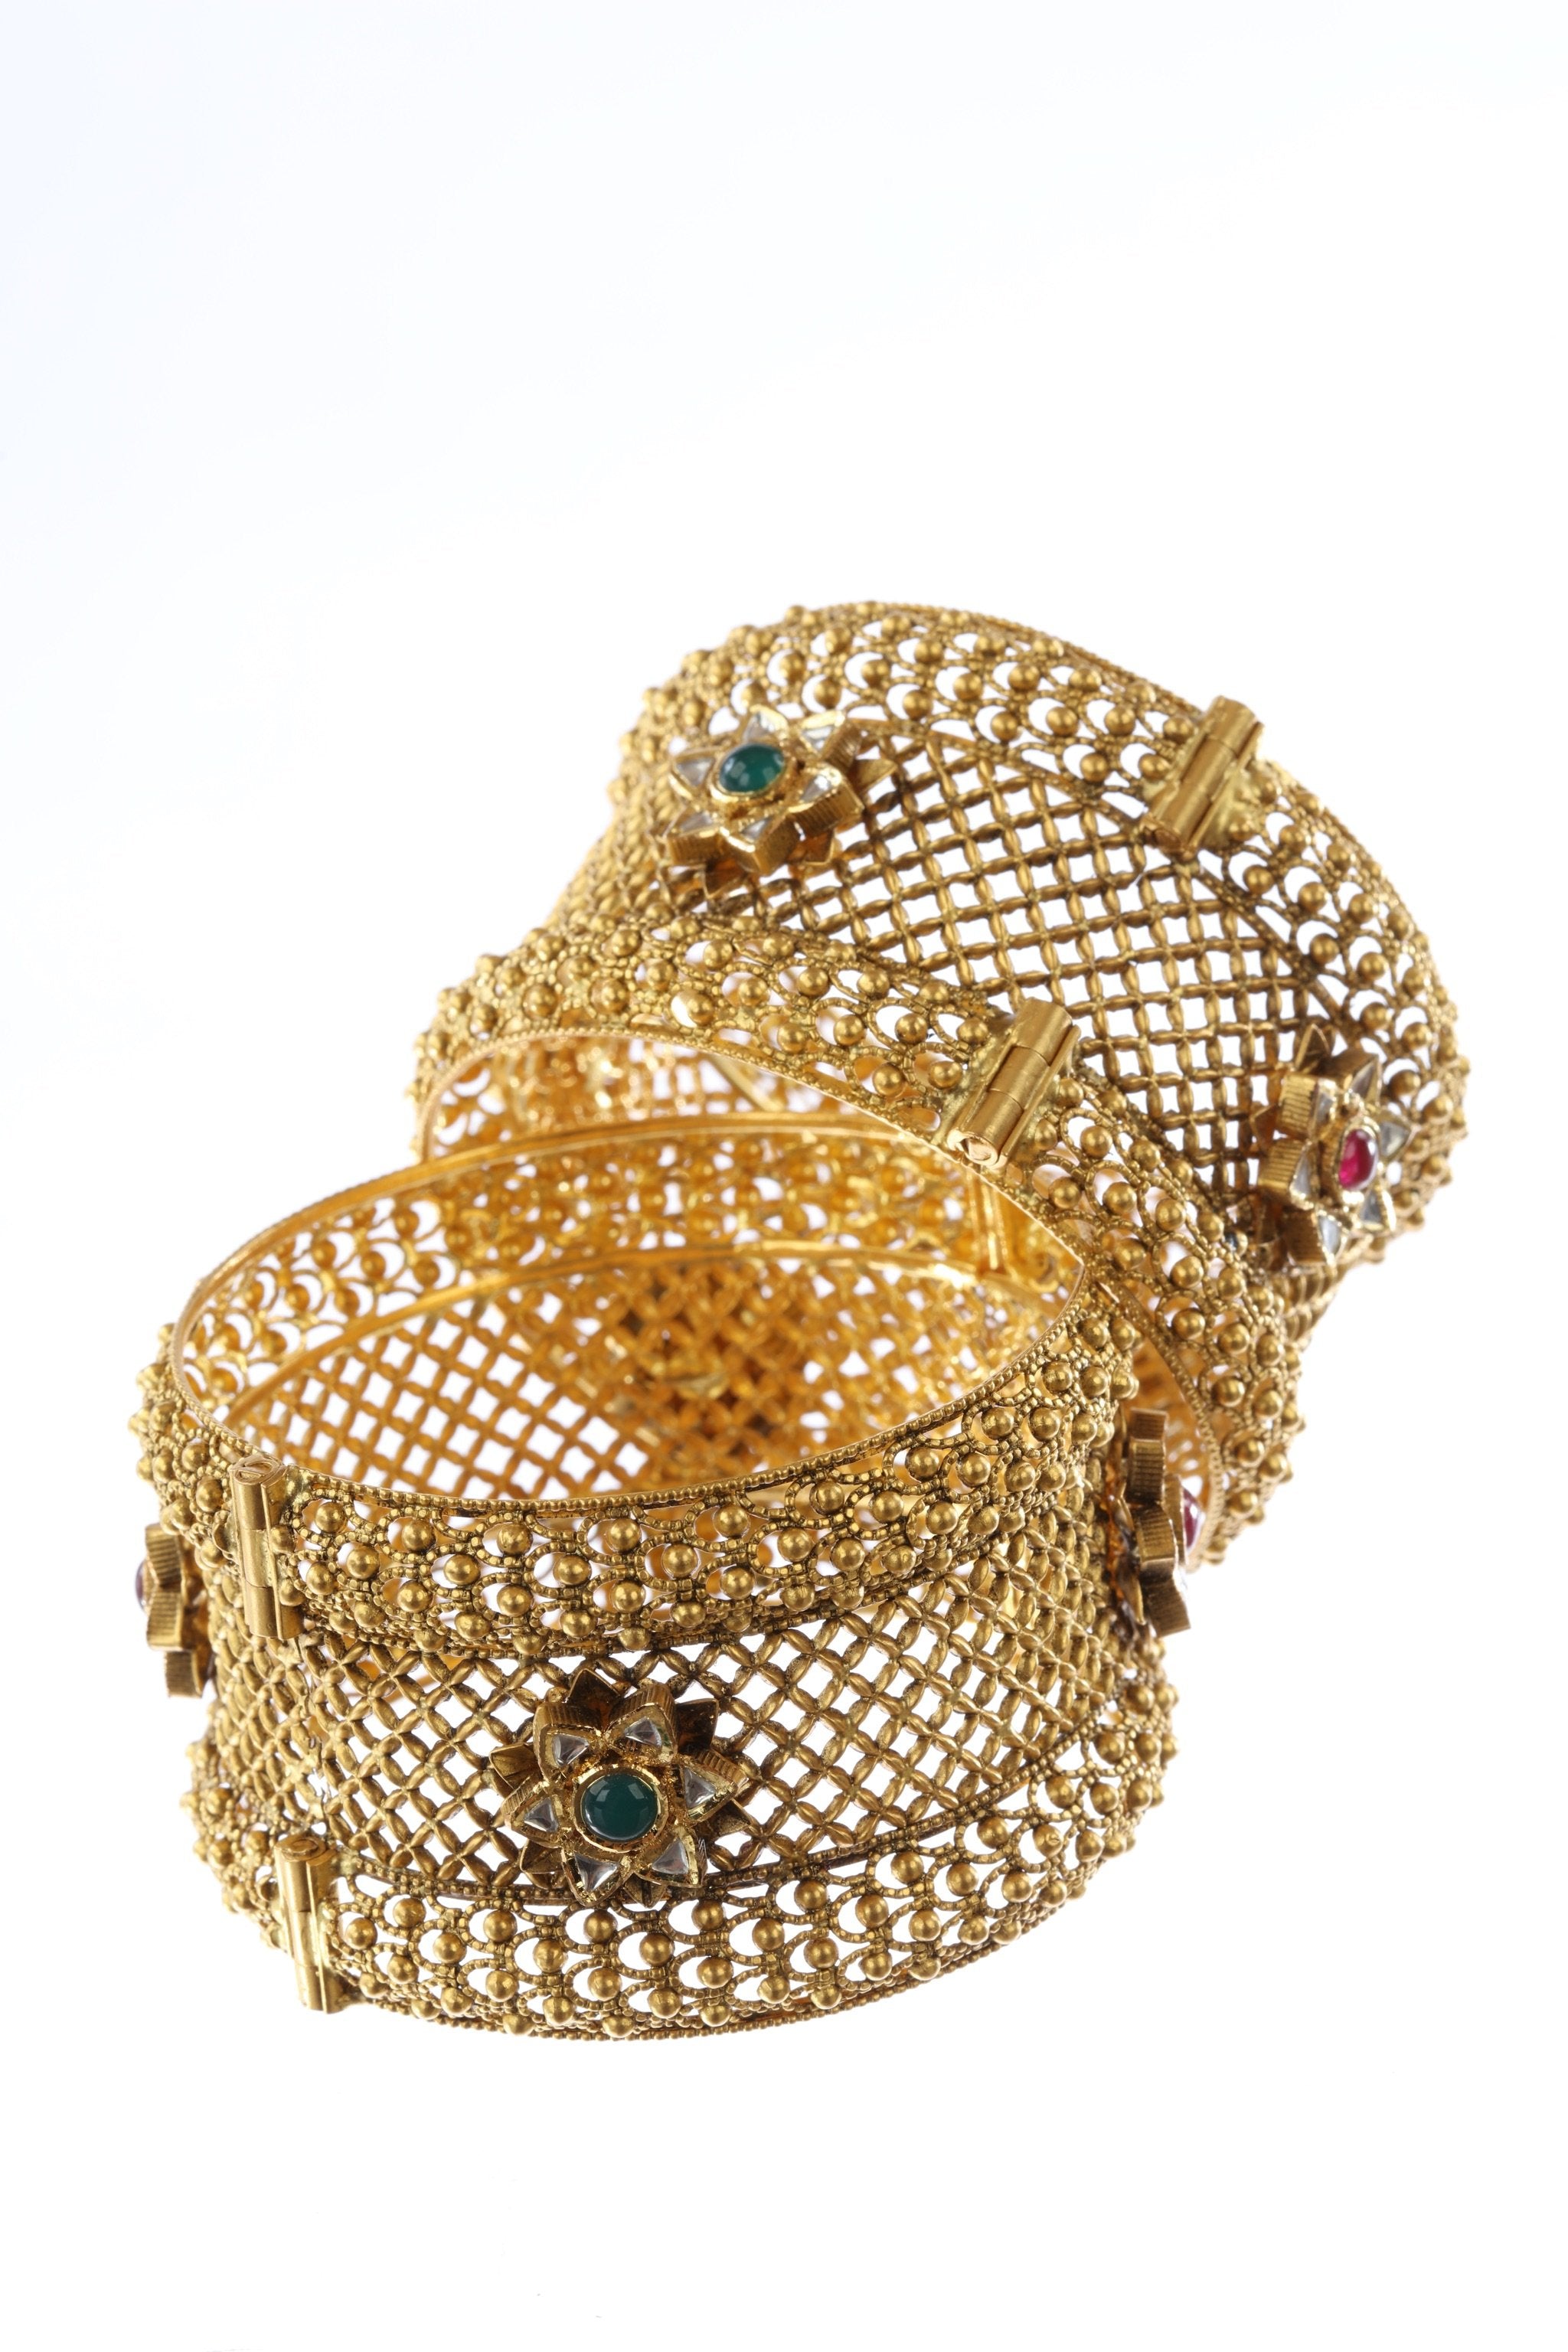 Gold Kundan Bracelets For Women 423 | Best Gold Jewellers